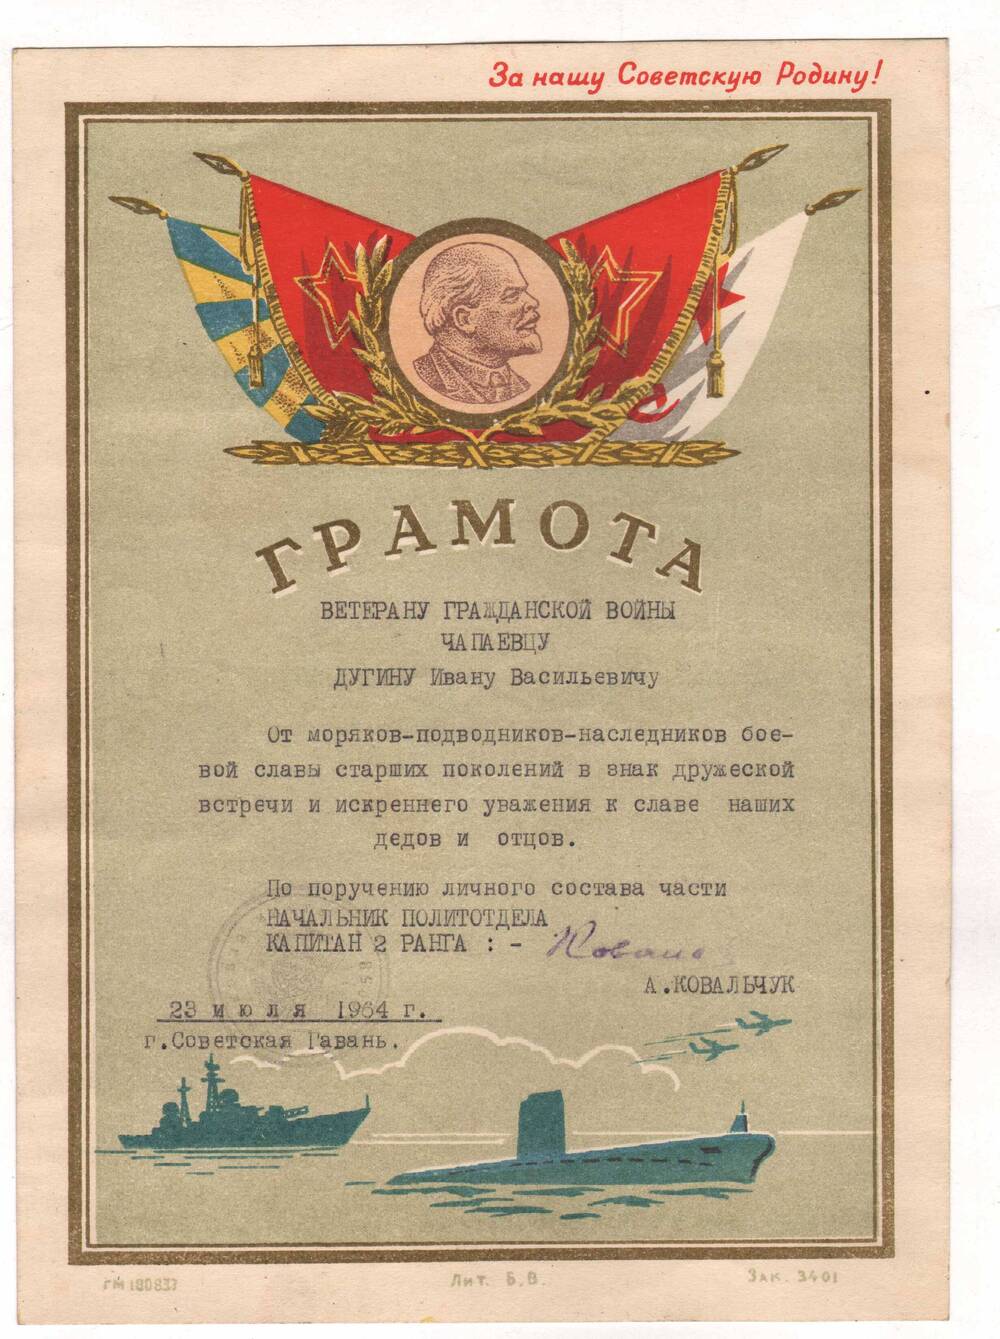 Грамота Дугину И.В., ветерану гражданской войны от моряков - подводников